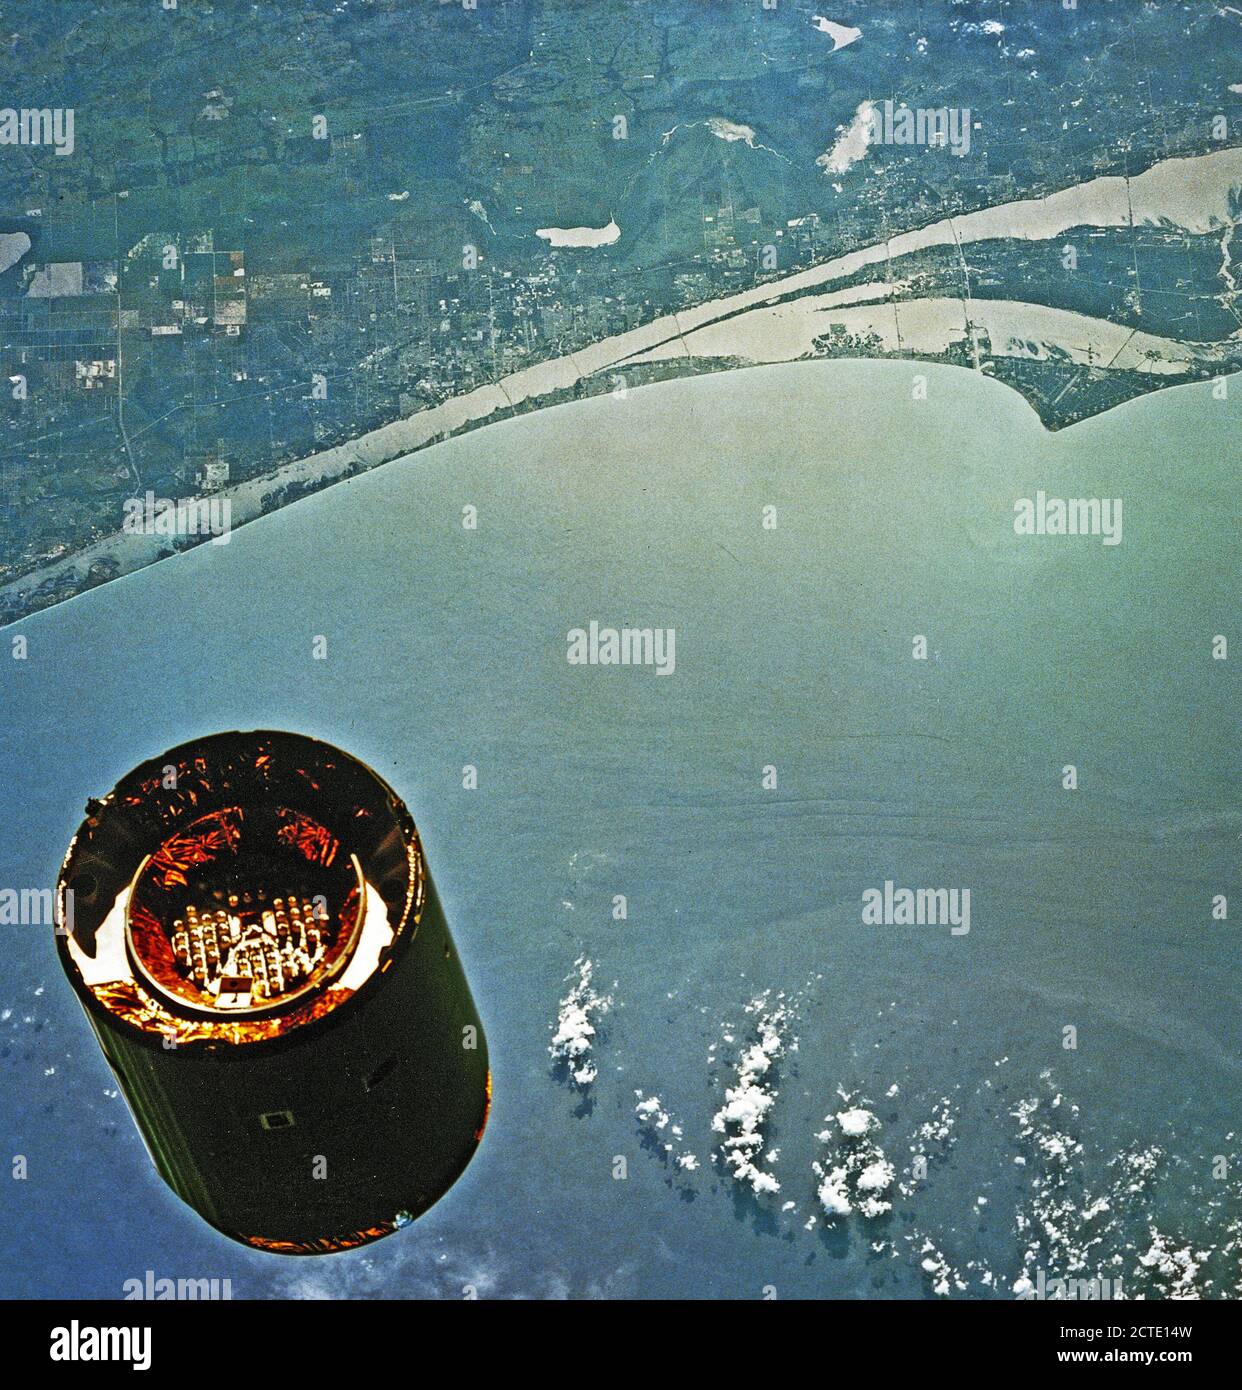 1992 - Questo bordo mostra fotografica della Florida costa atlantica e il Cape Canaveral area come lo sfondo di questa scena di INTELSAT VI L'approccio lo Shuttle Endeavour. Foto Stock